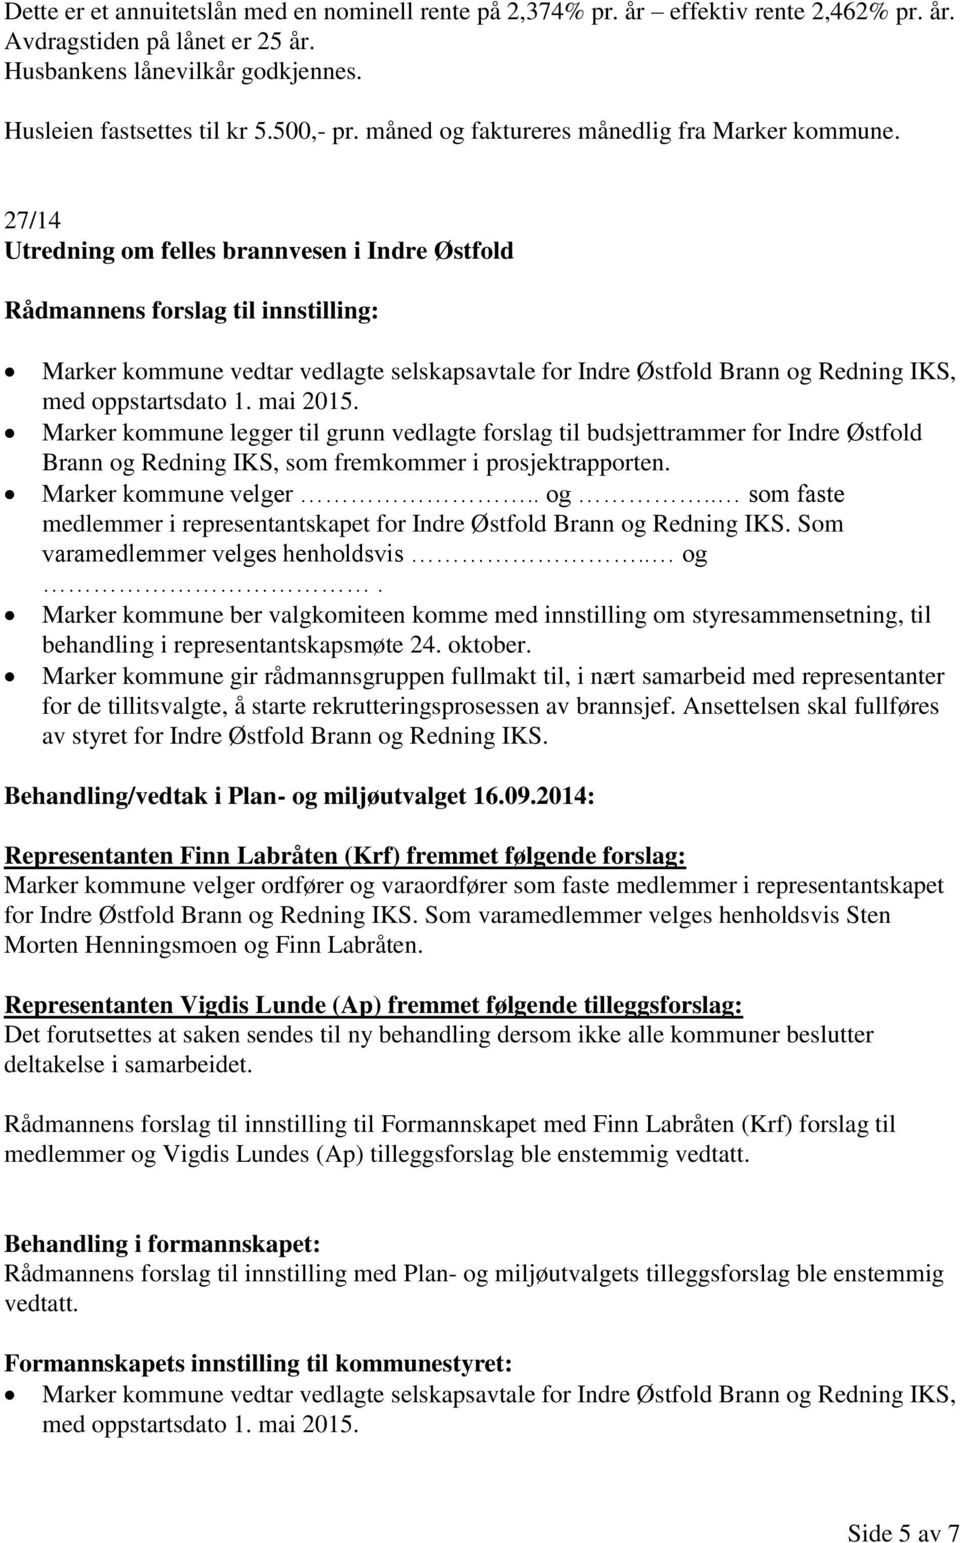 27/14 Utredning om felles brannvesen i Indre Østfold Marker kommune vedtar vedlagte selskapsavtale for Indre Østfold Brann og Redning IKS, med oppstartsdato 1. mai 2015.